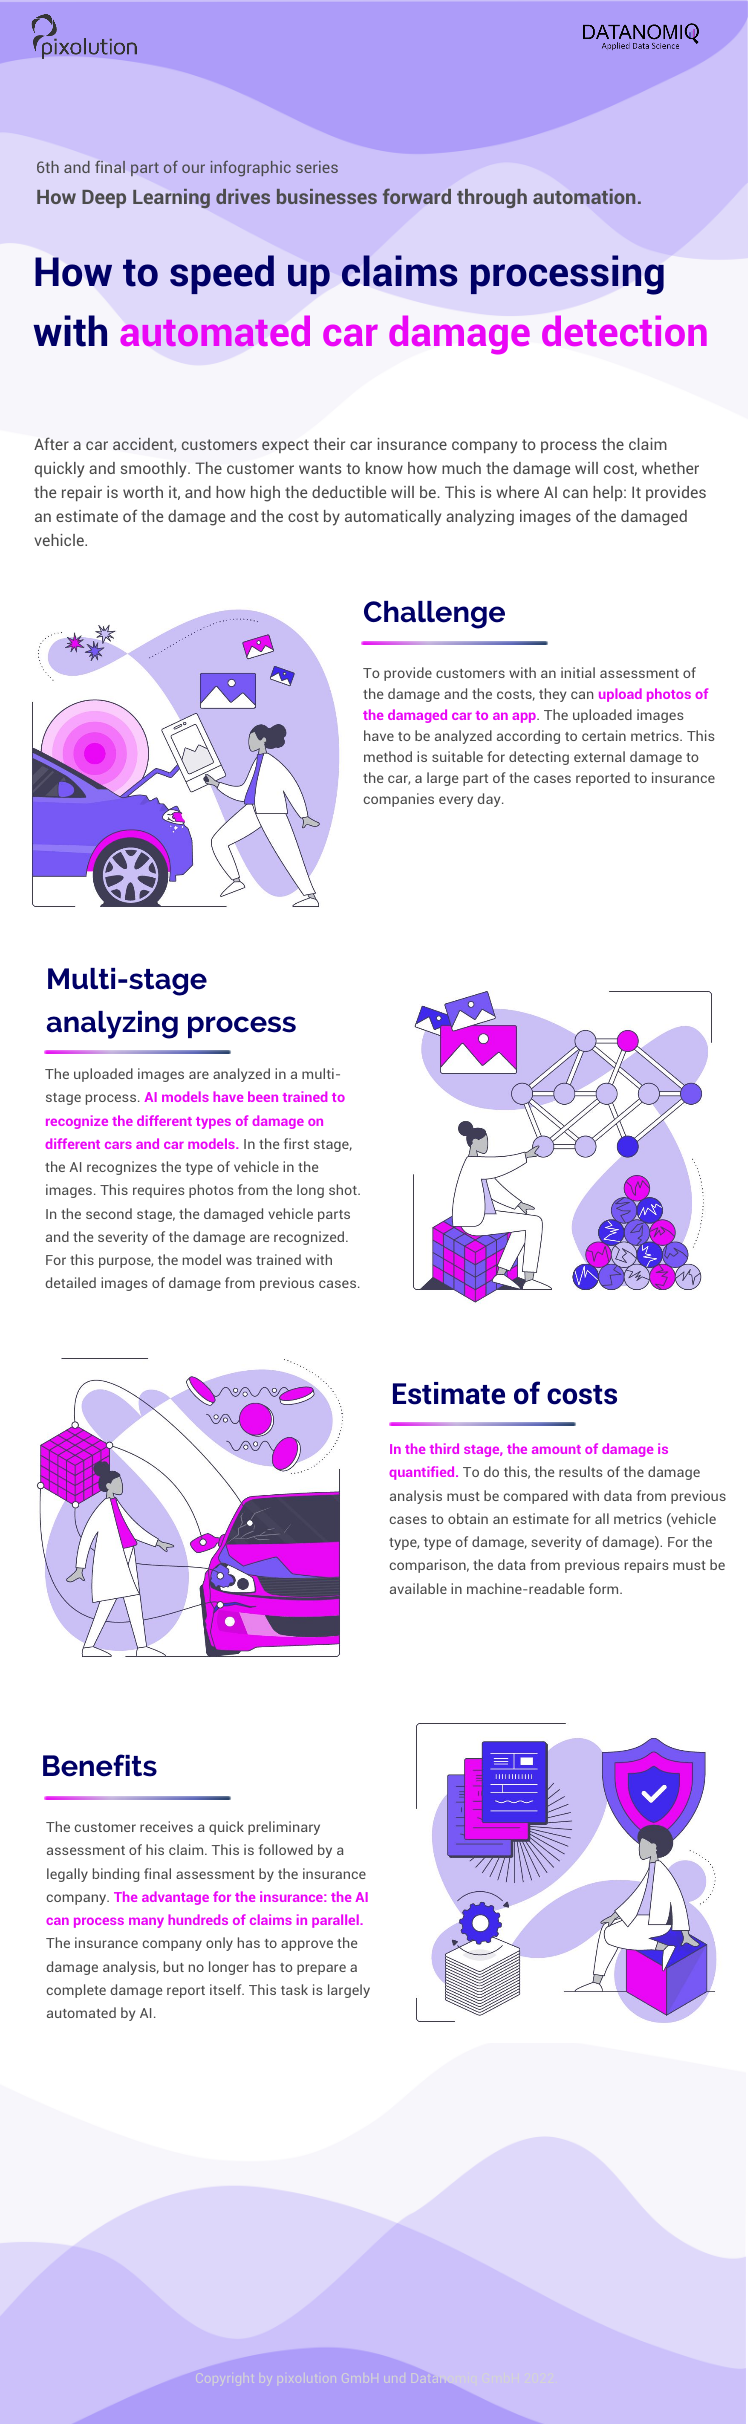 Automatisierbare Einschätzung des Sachschadens nach Verkehrsunfällen auf Grundlage von Bildmaterial durch Künstliche Intelligenz (Deep Learning).